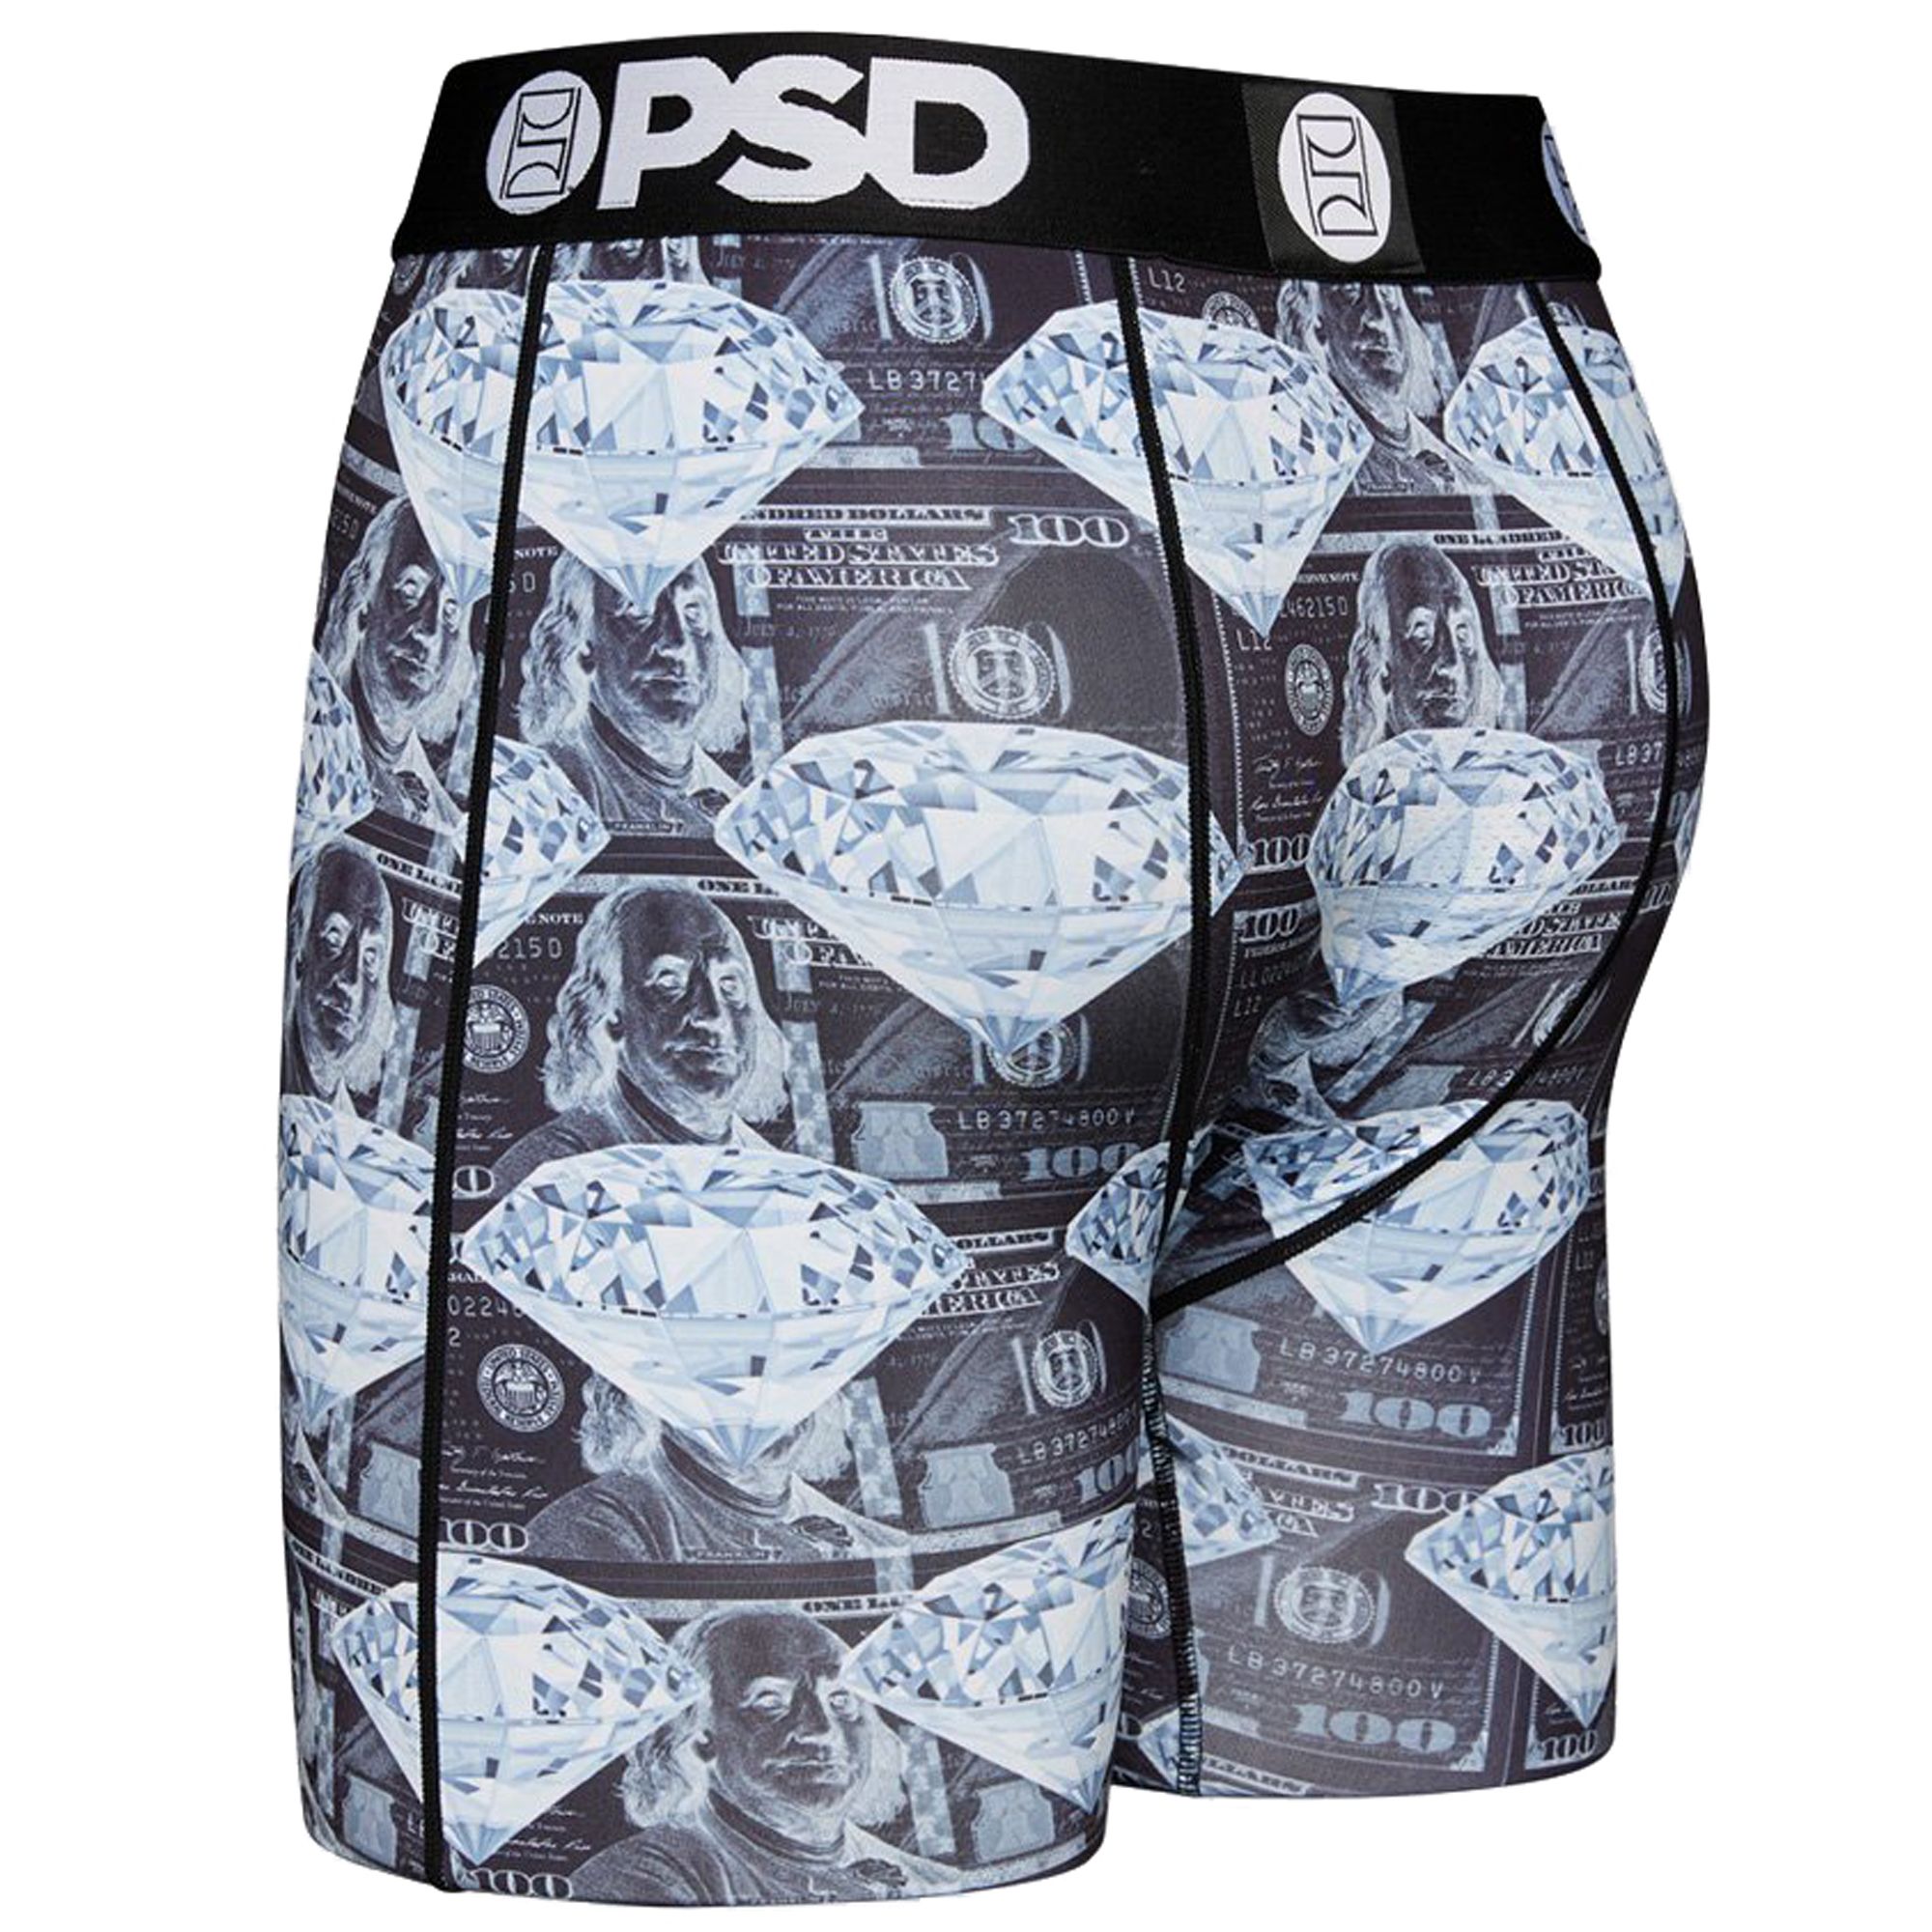 PSD Money 3 Pack Underwear 321180096 - Shiekh